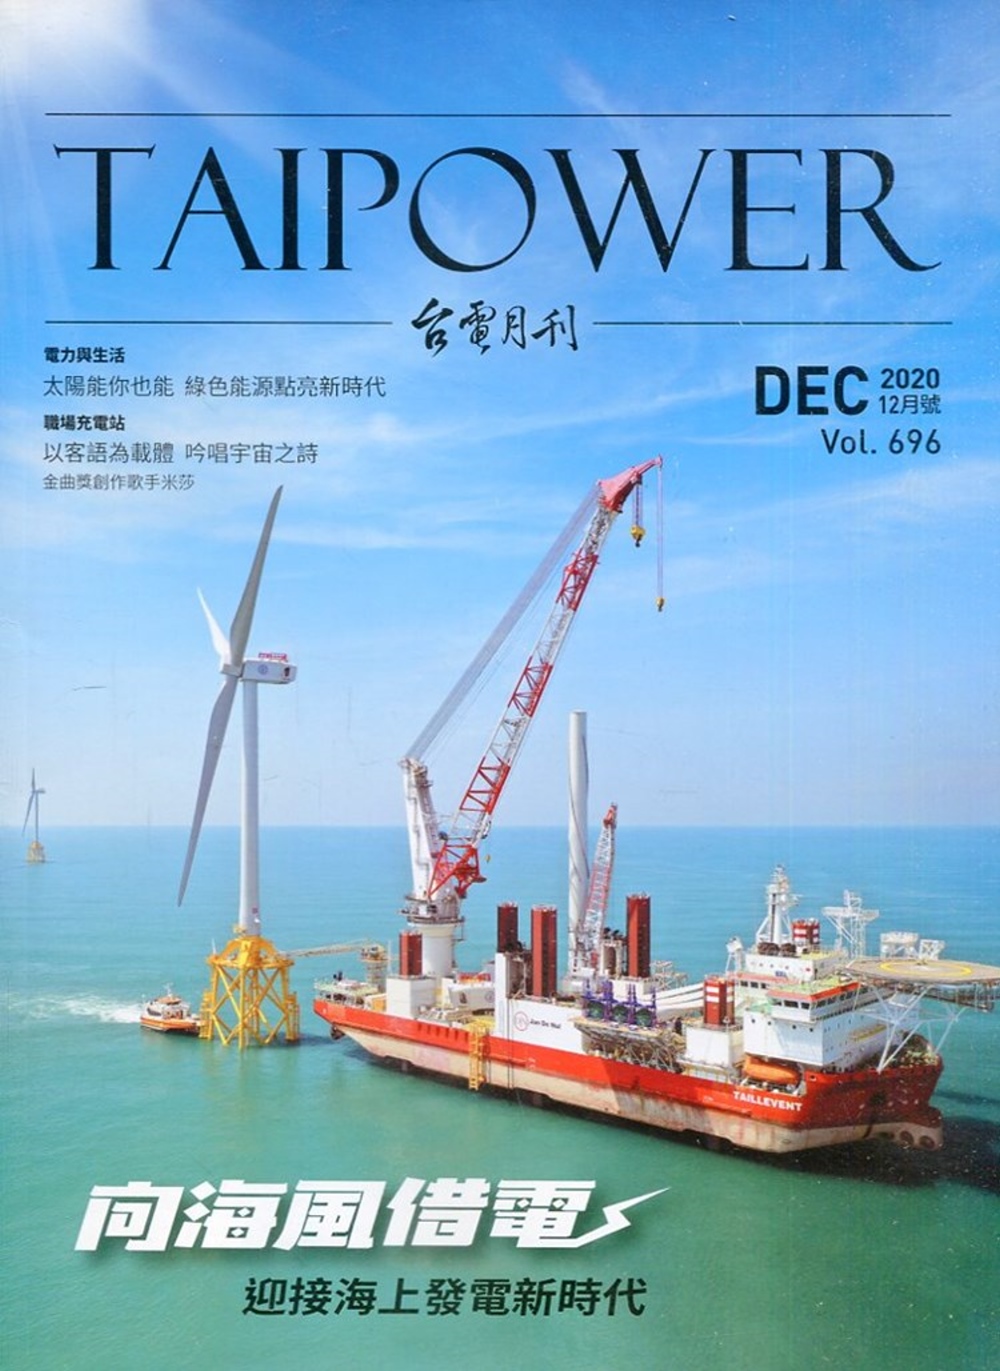 台電月刊696期109/12 向海風借電 迎接海上發電新時代